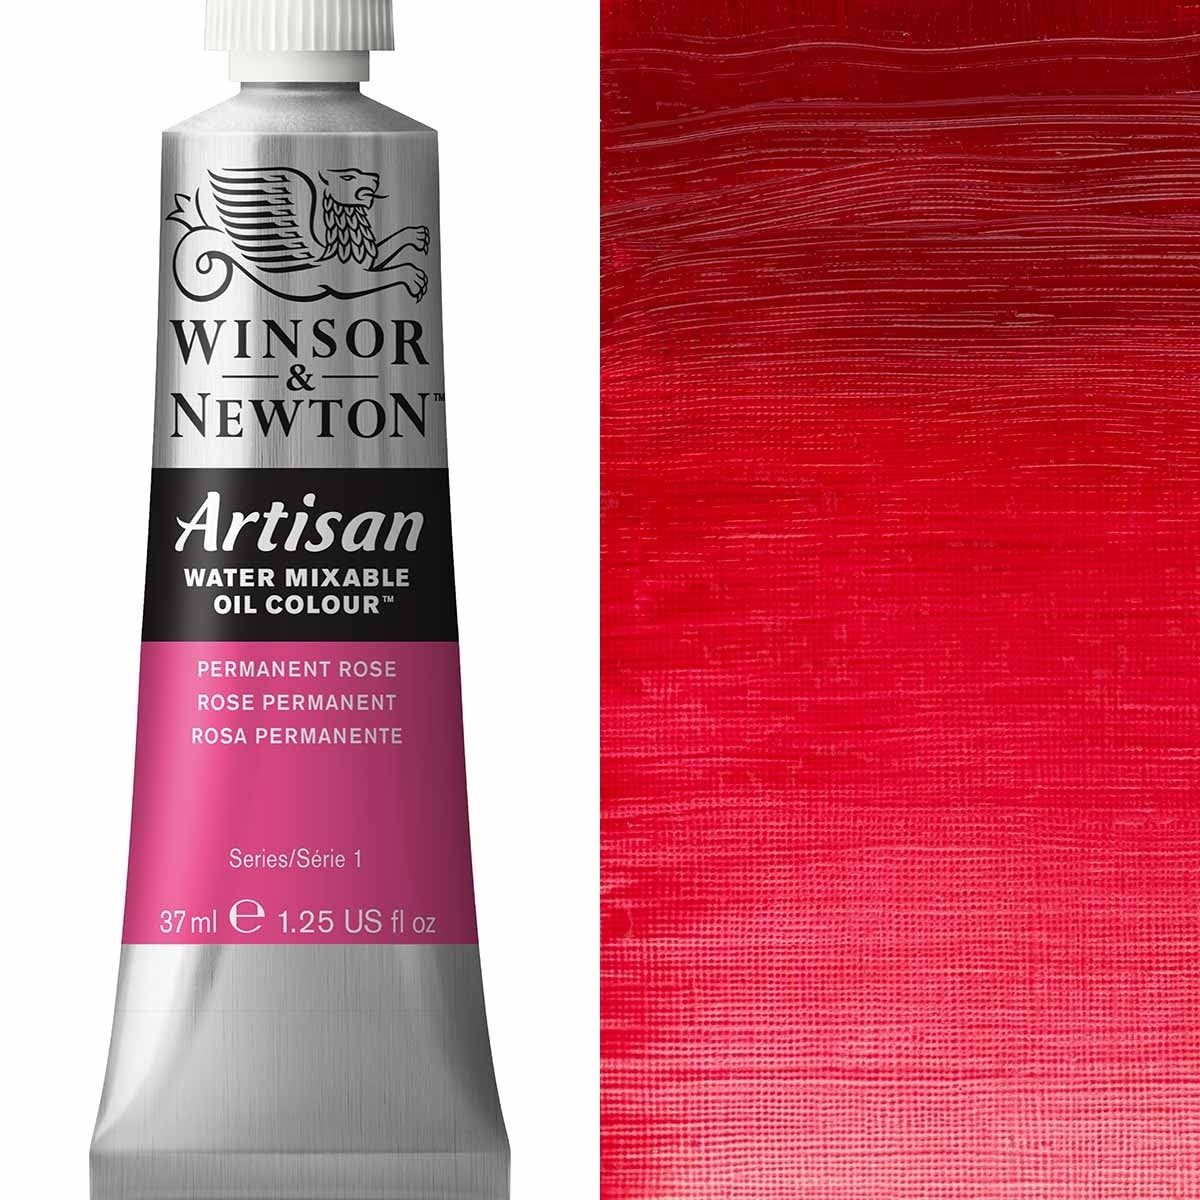 Winsor e Newton - Watermixable di colore olio artigianale - 37 ml - Rosa permanente